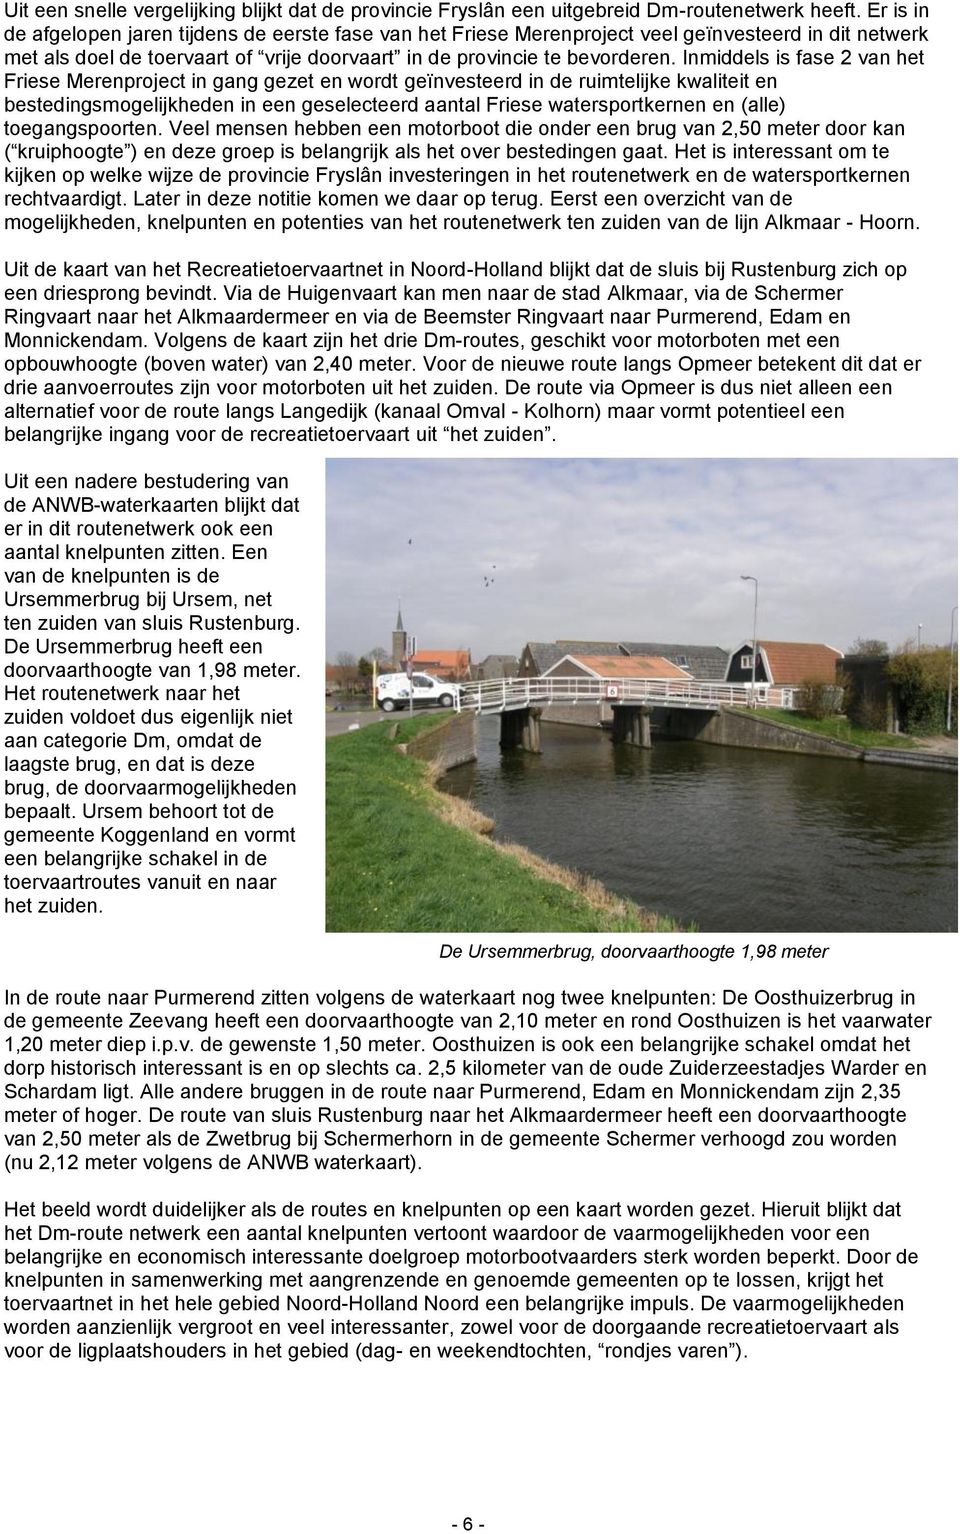 Inmiddels is fase 2 van het Friese Merenproject in gang gezet en wordt geïnvesteerd in de ruimtelijke kwaliteit en bestedingsmogelijkheden in een geselecteerd aantal Friese watersportkernen en (alle)